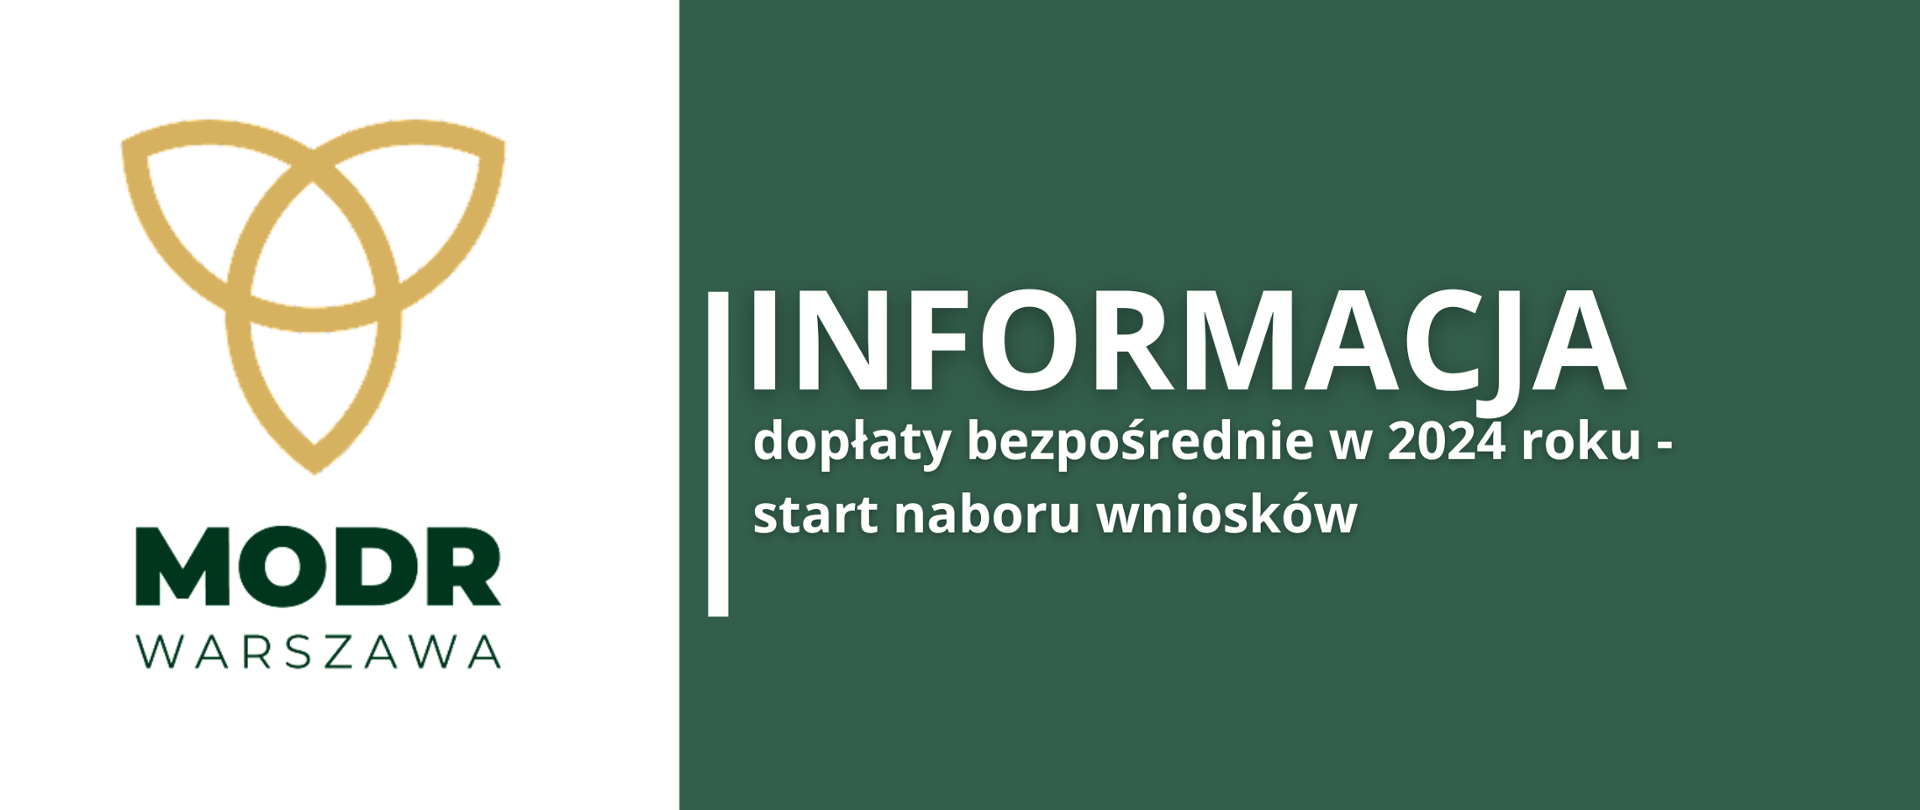 Logotyp MODR Warszawa obok zielony prostokąt na którym widnieje treść: "Informacja dopłaty bezpośrednie w 2024 roku - start naboru wniosków